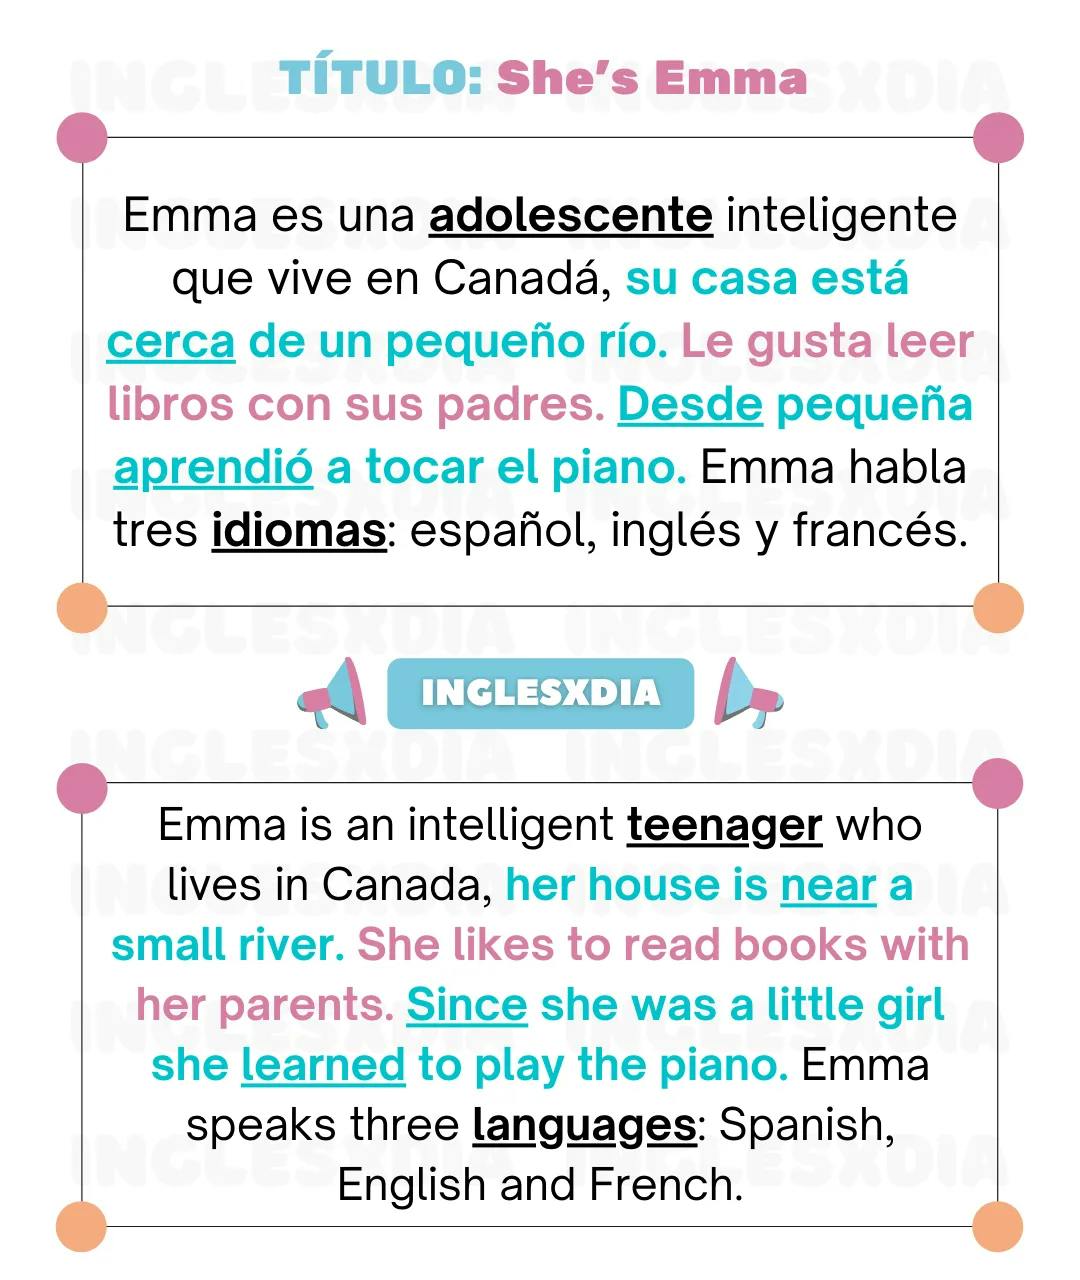 Curso de inglés en línea: Lectura intermedia · She's Emma